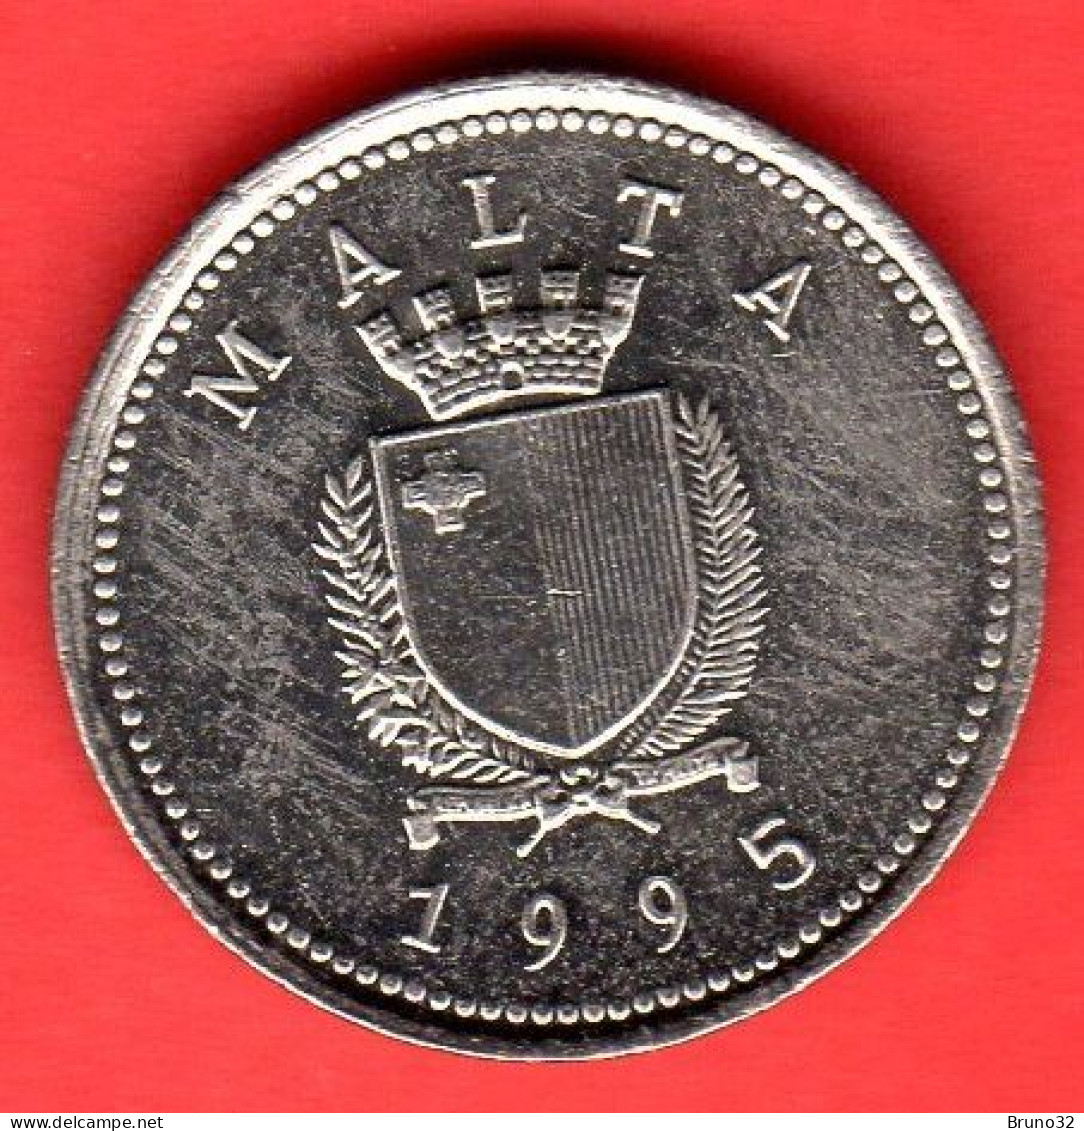 MALTA - 1995 - 2 Cents - QFDC/aUNC - Come Da Foto - Malte